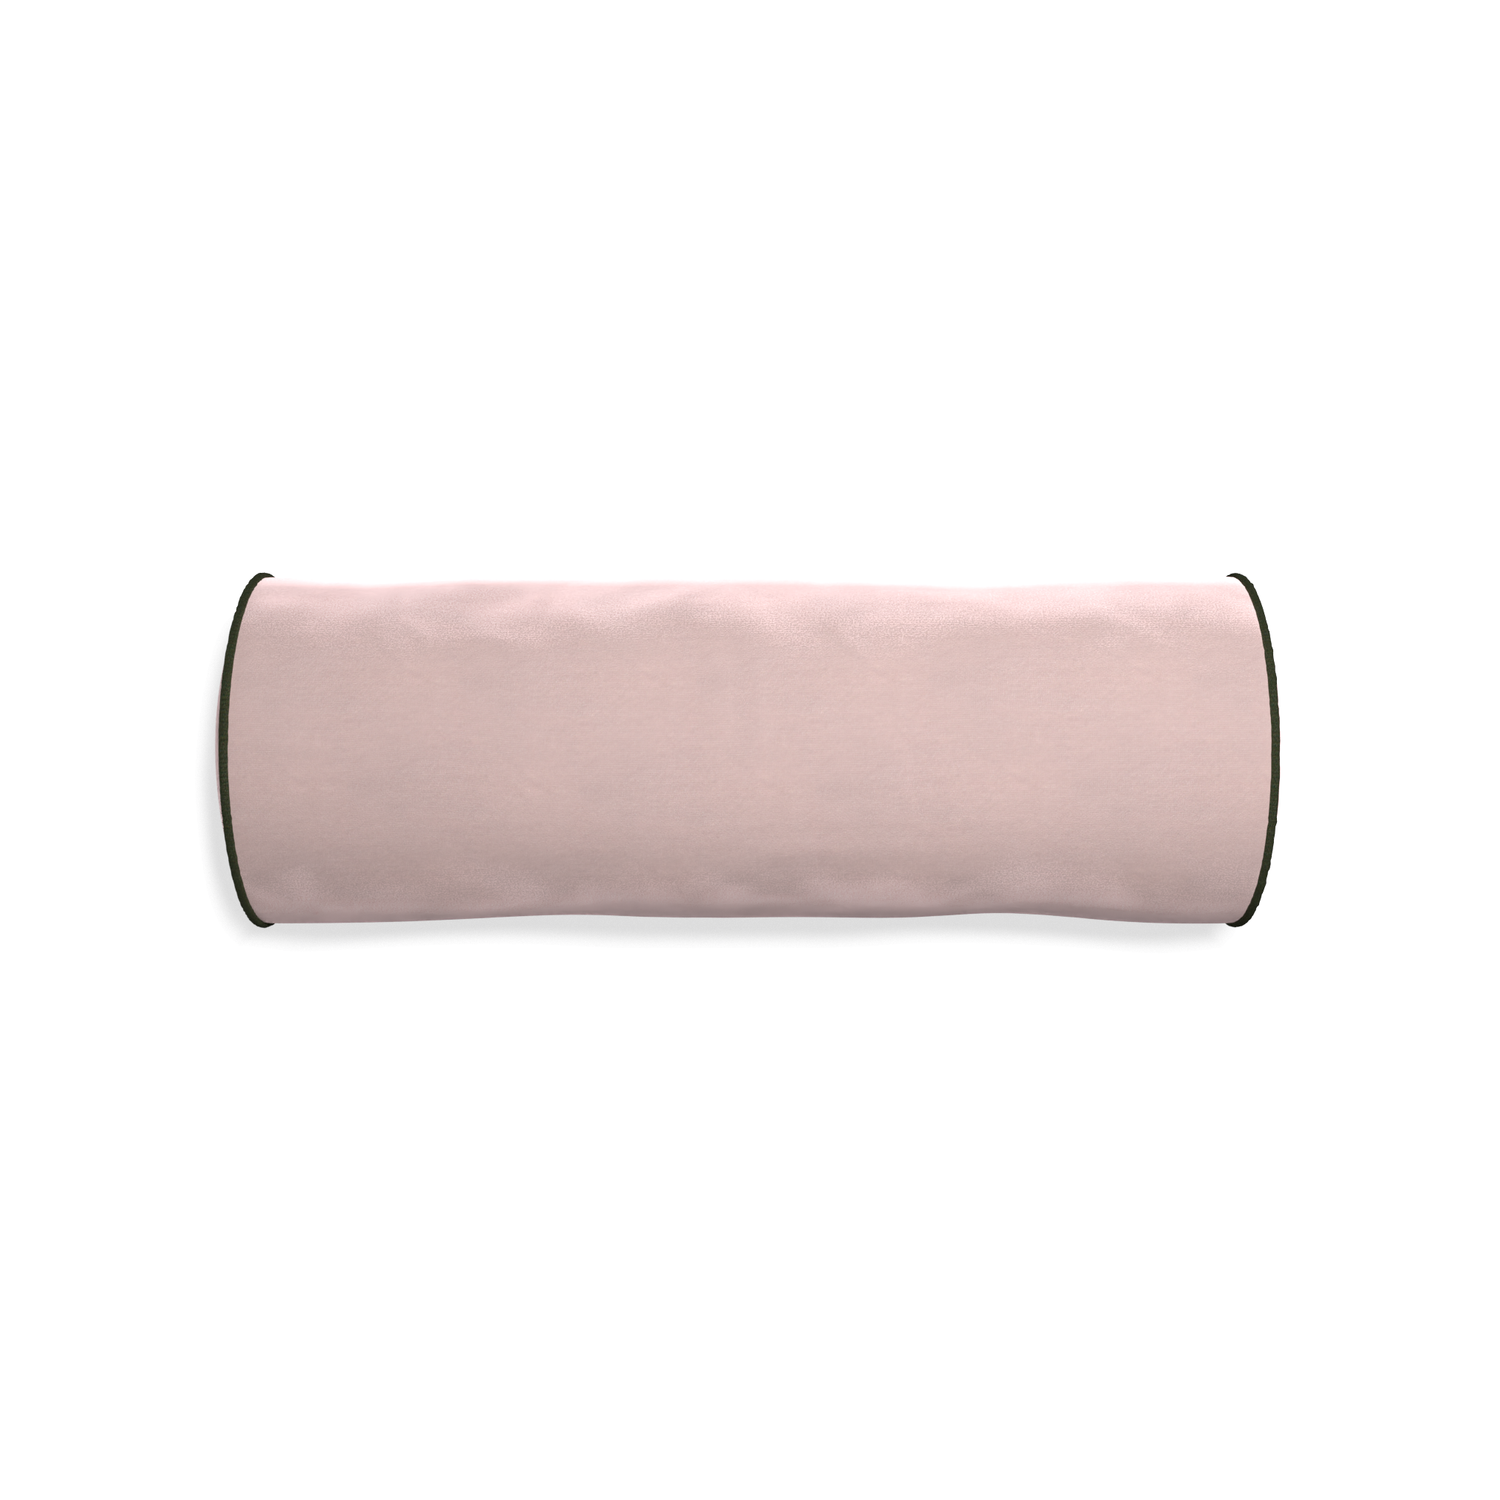 bolster light pink velvet pillow with fern green piping